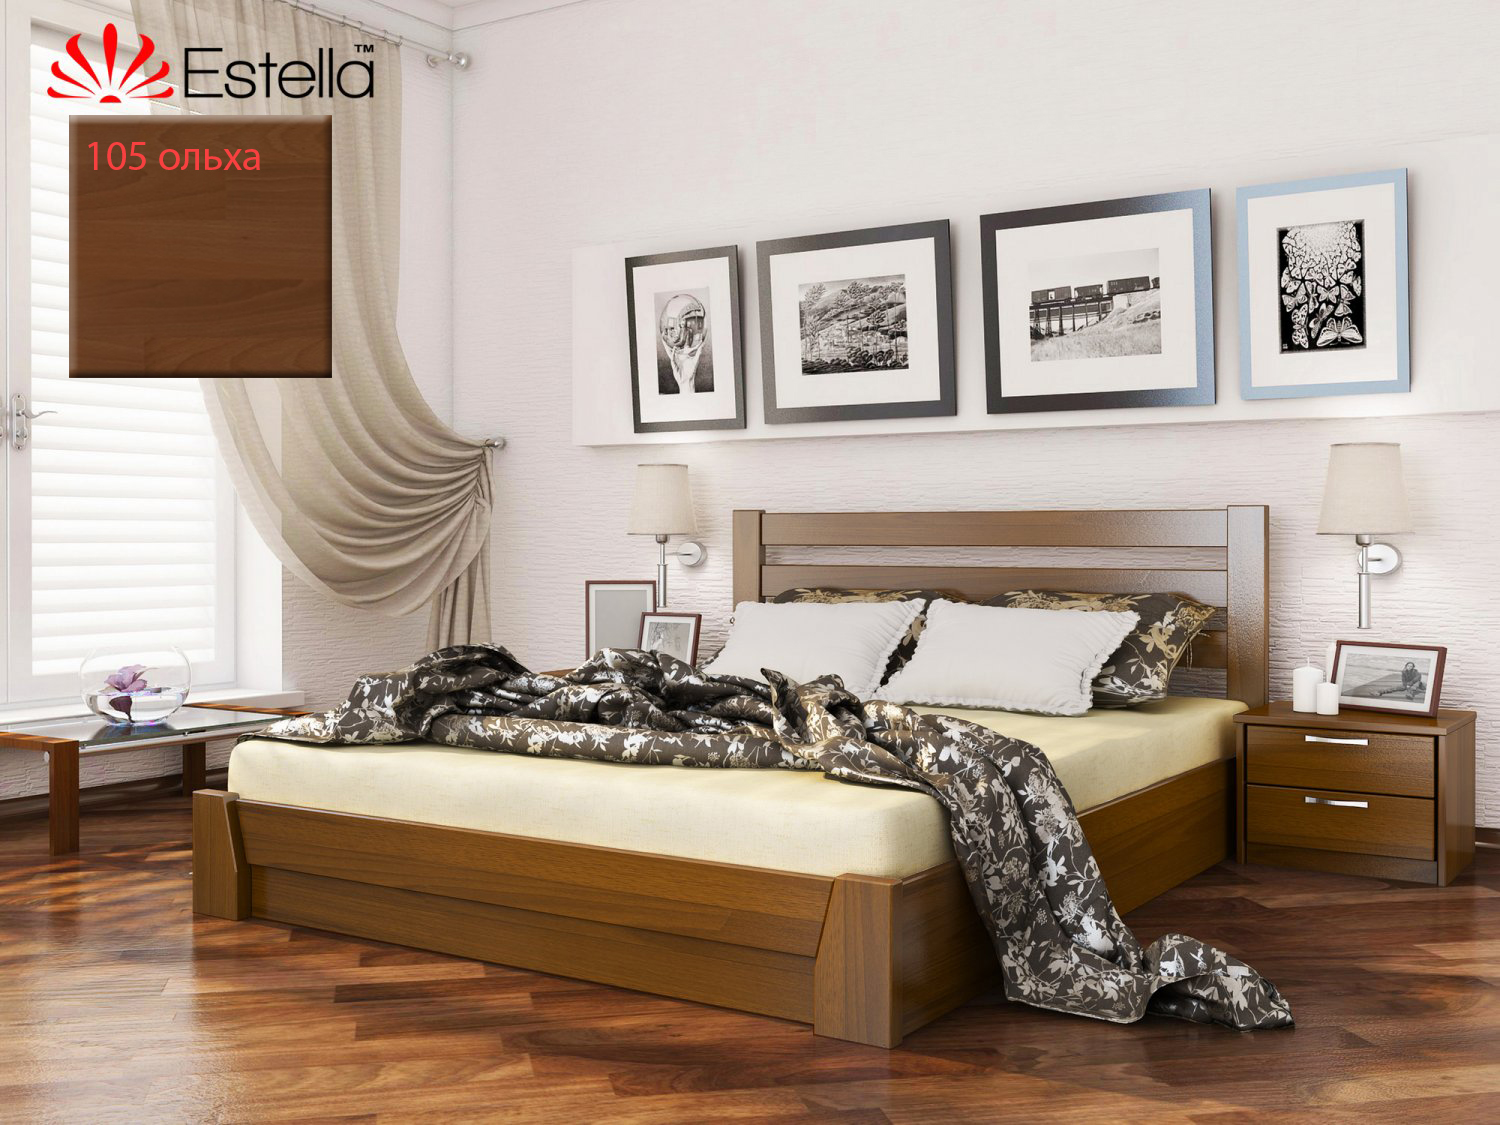 Кровать Estella Selena / Селена  фото